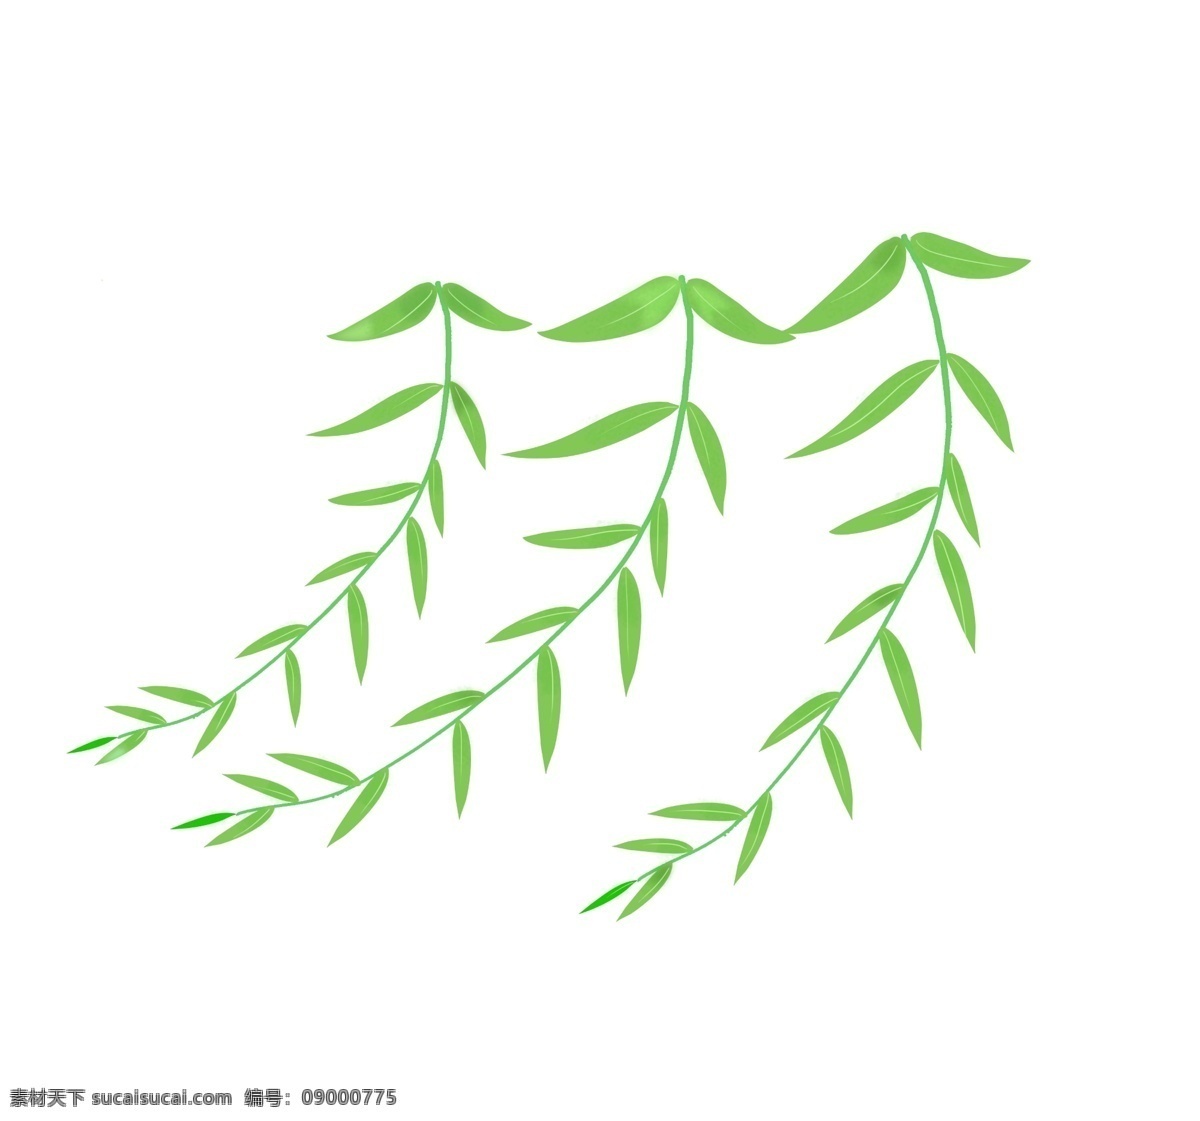 三条 柳叶 树枝 插画 三条柳叶插画 绿色的叶子 柳叶飘飘效果 绿色 树叶 绿色的植物 创意树枝插画